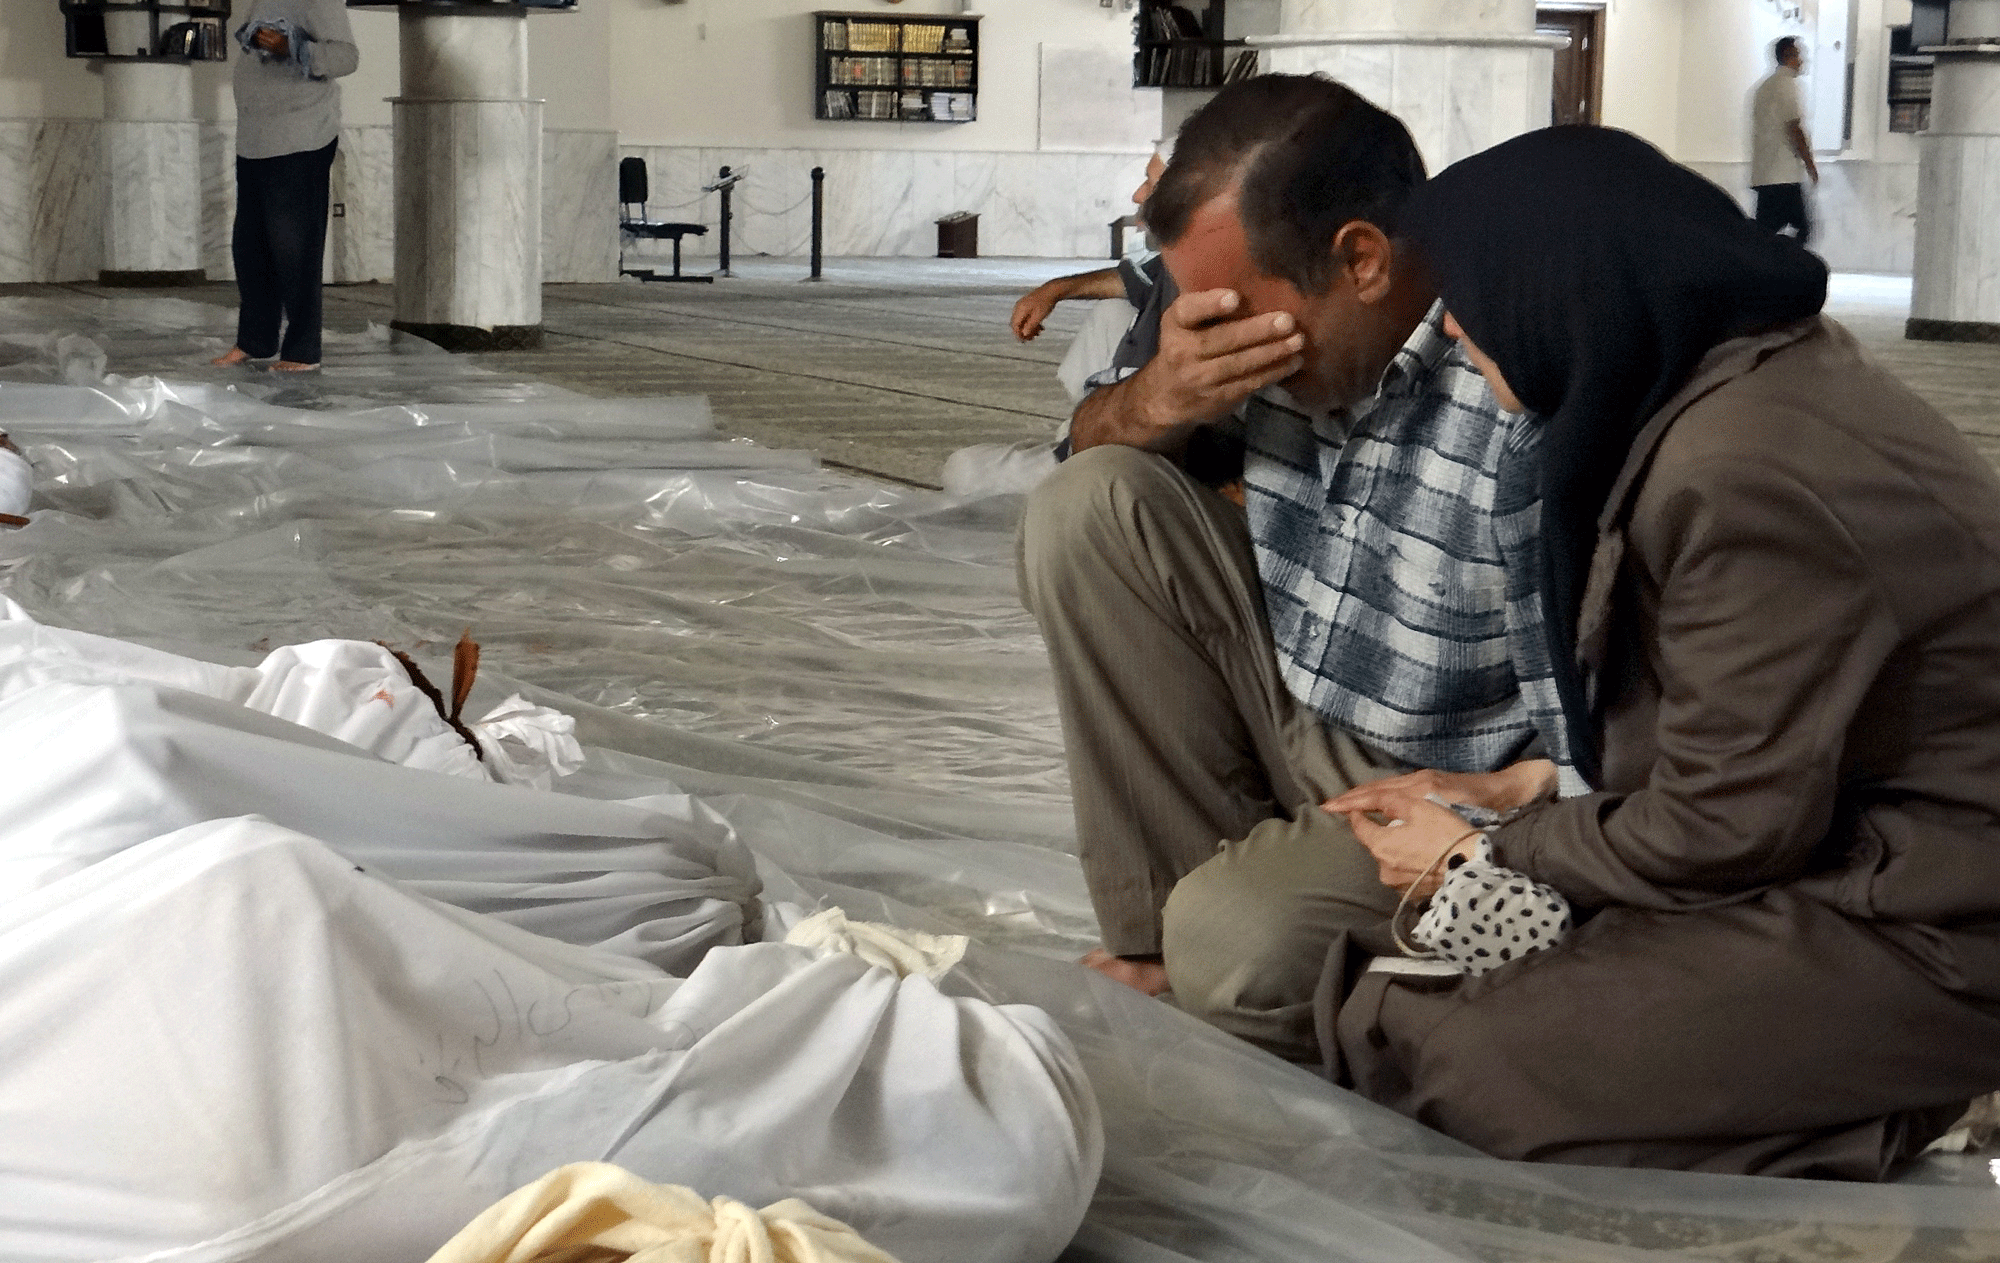 Préparation des funérailles à Ghouta, dans la banlieue est de Damas, après les attaques chimiques. [Shaam News Network - Anadolu Agency]